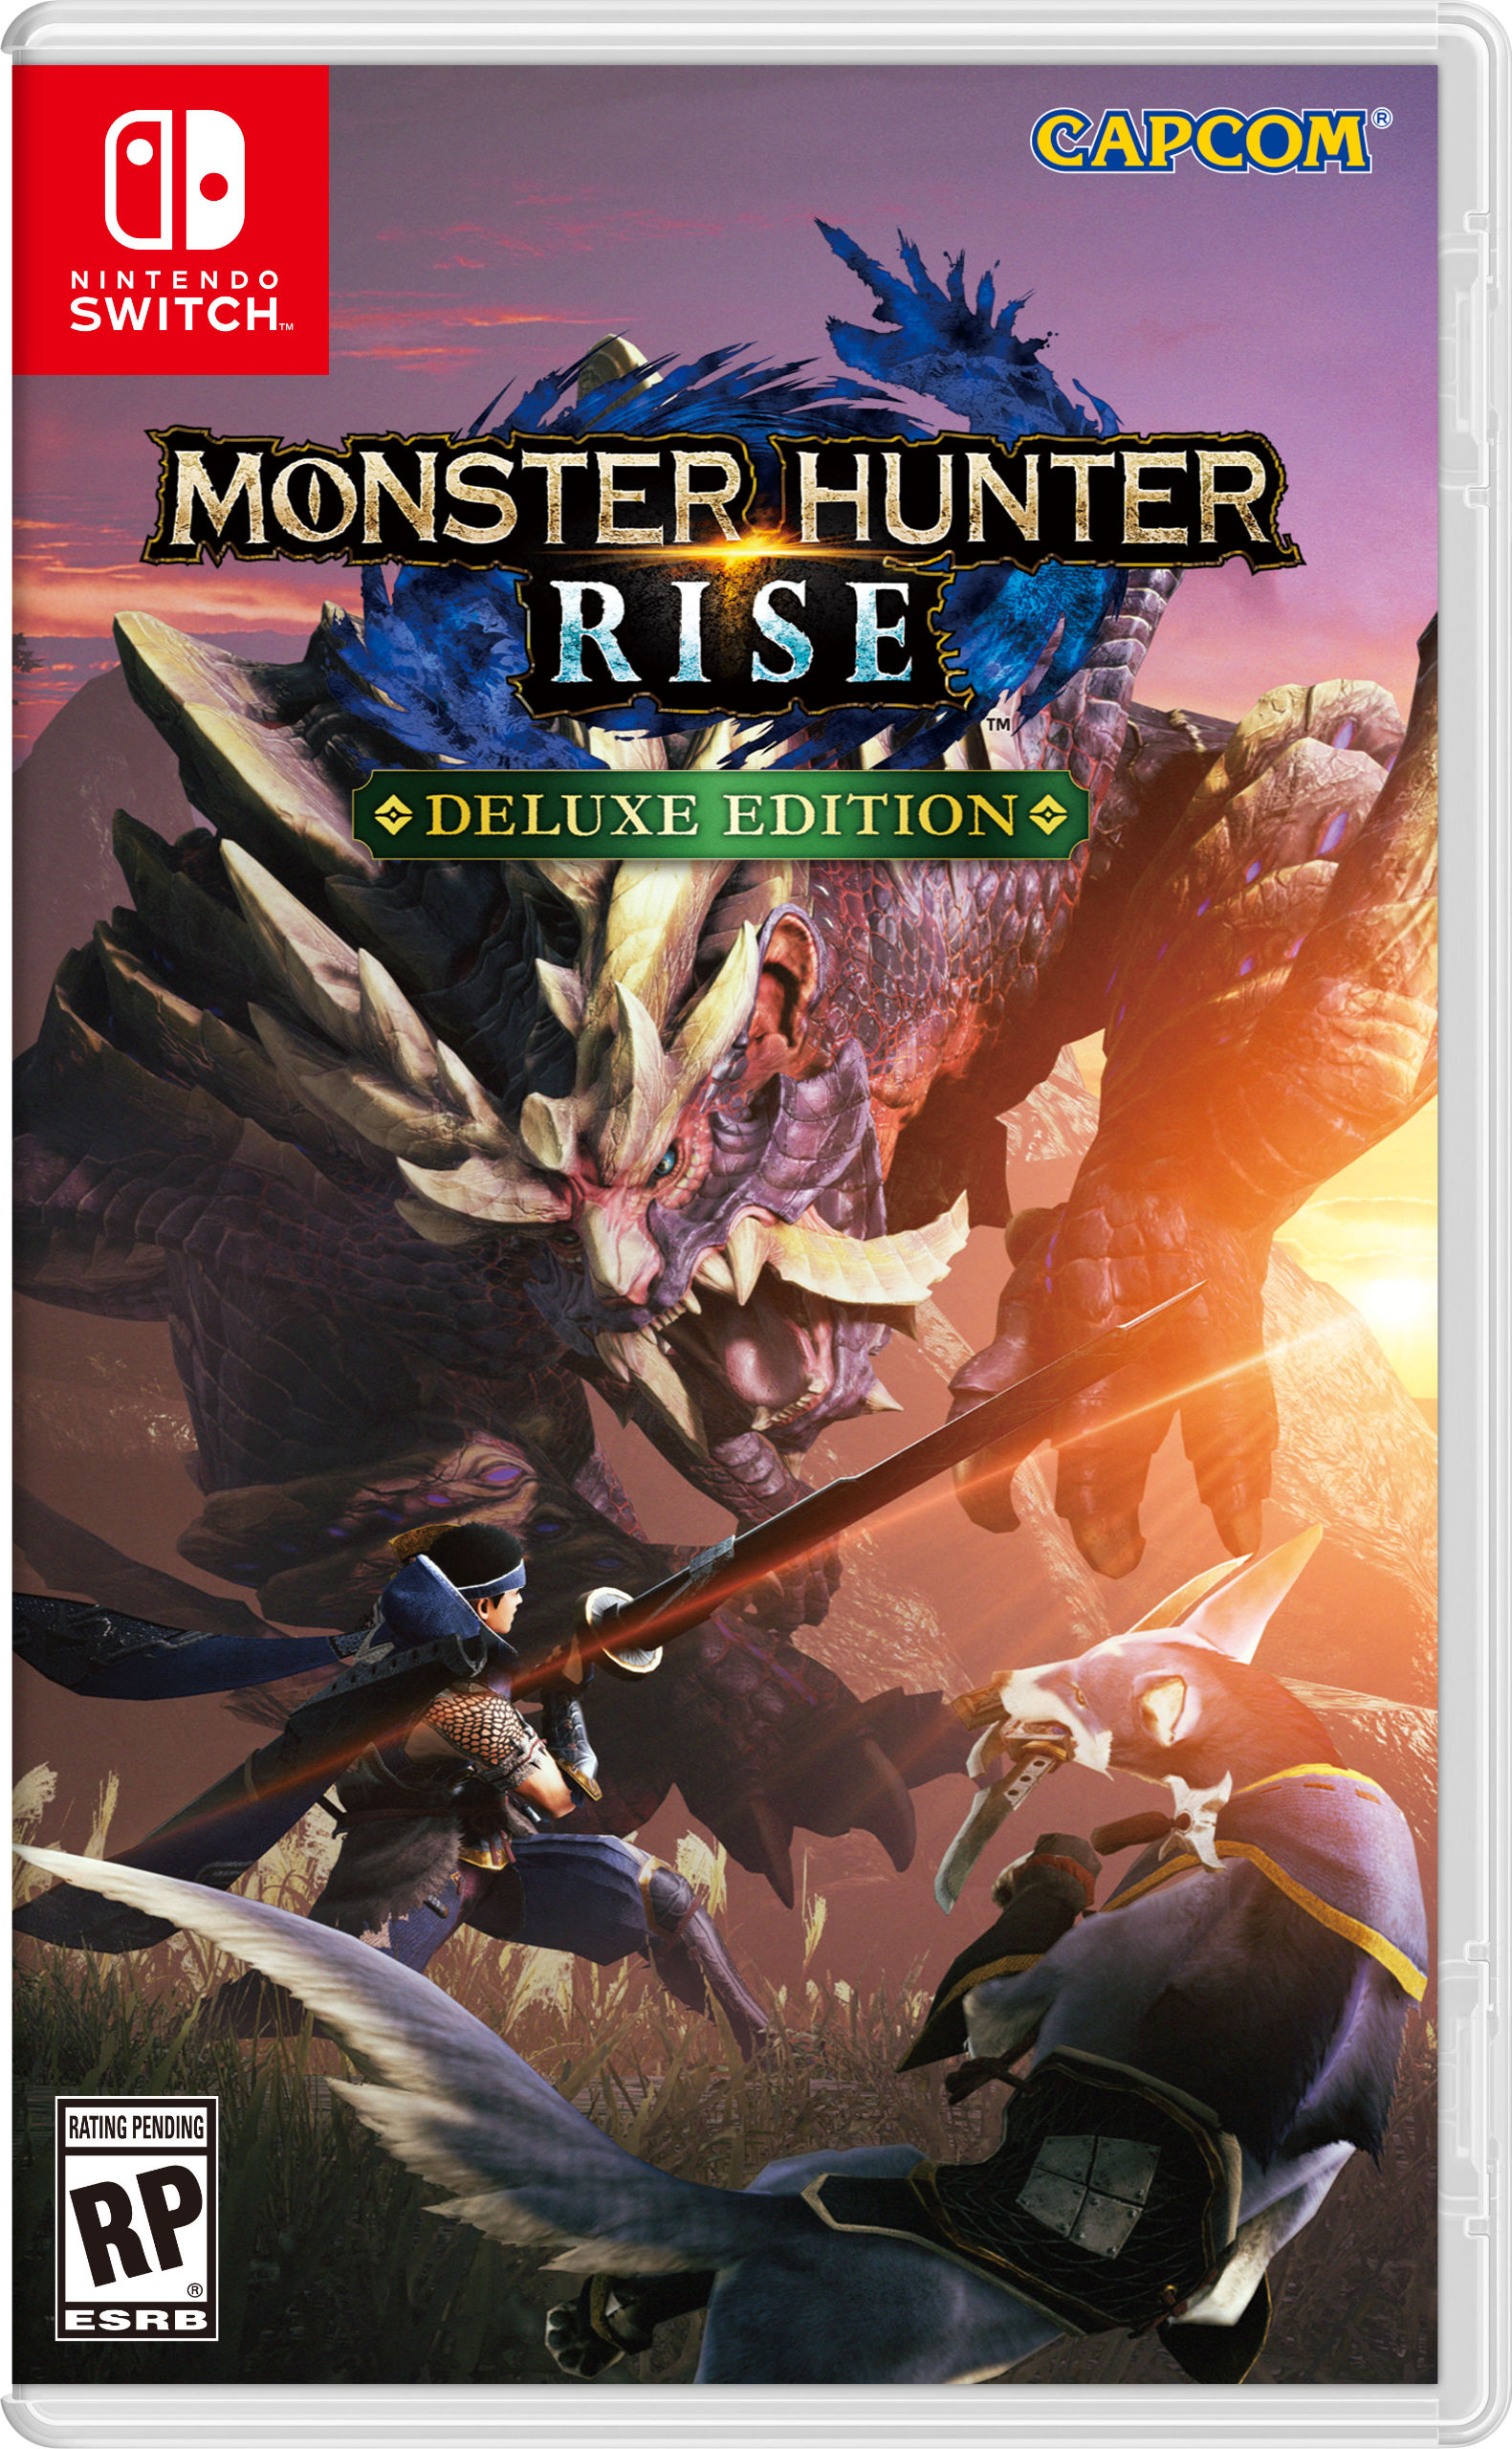 Monster-Hunter-Rise-Cover-Art-US-Deluxe-Edition.jpg